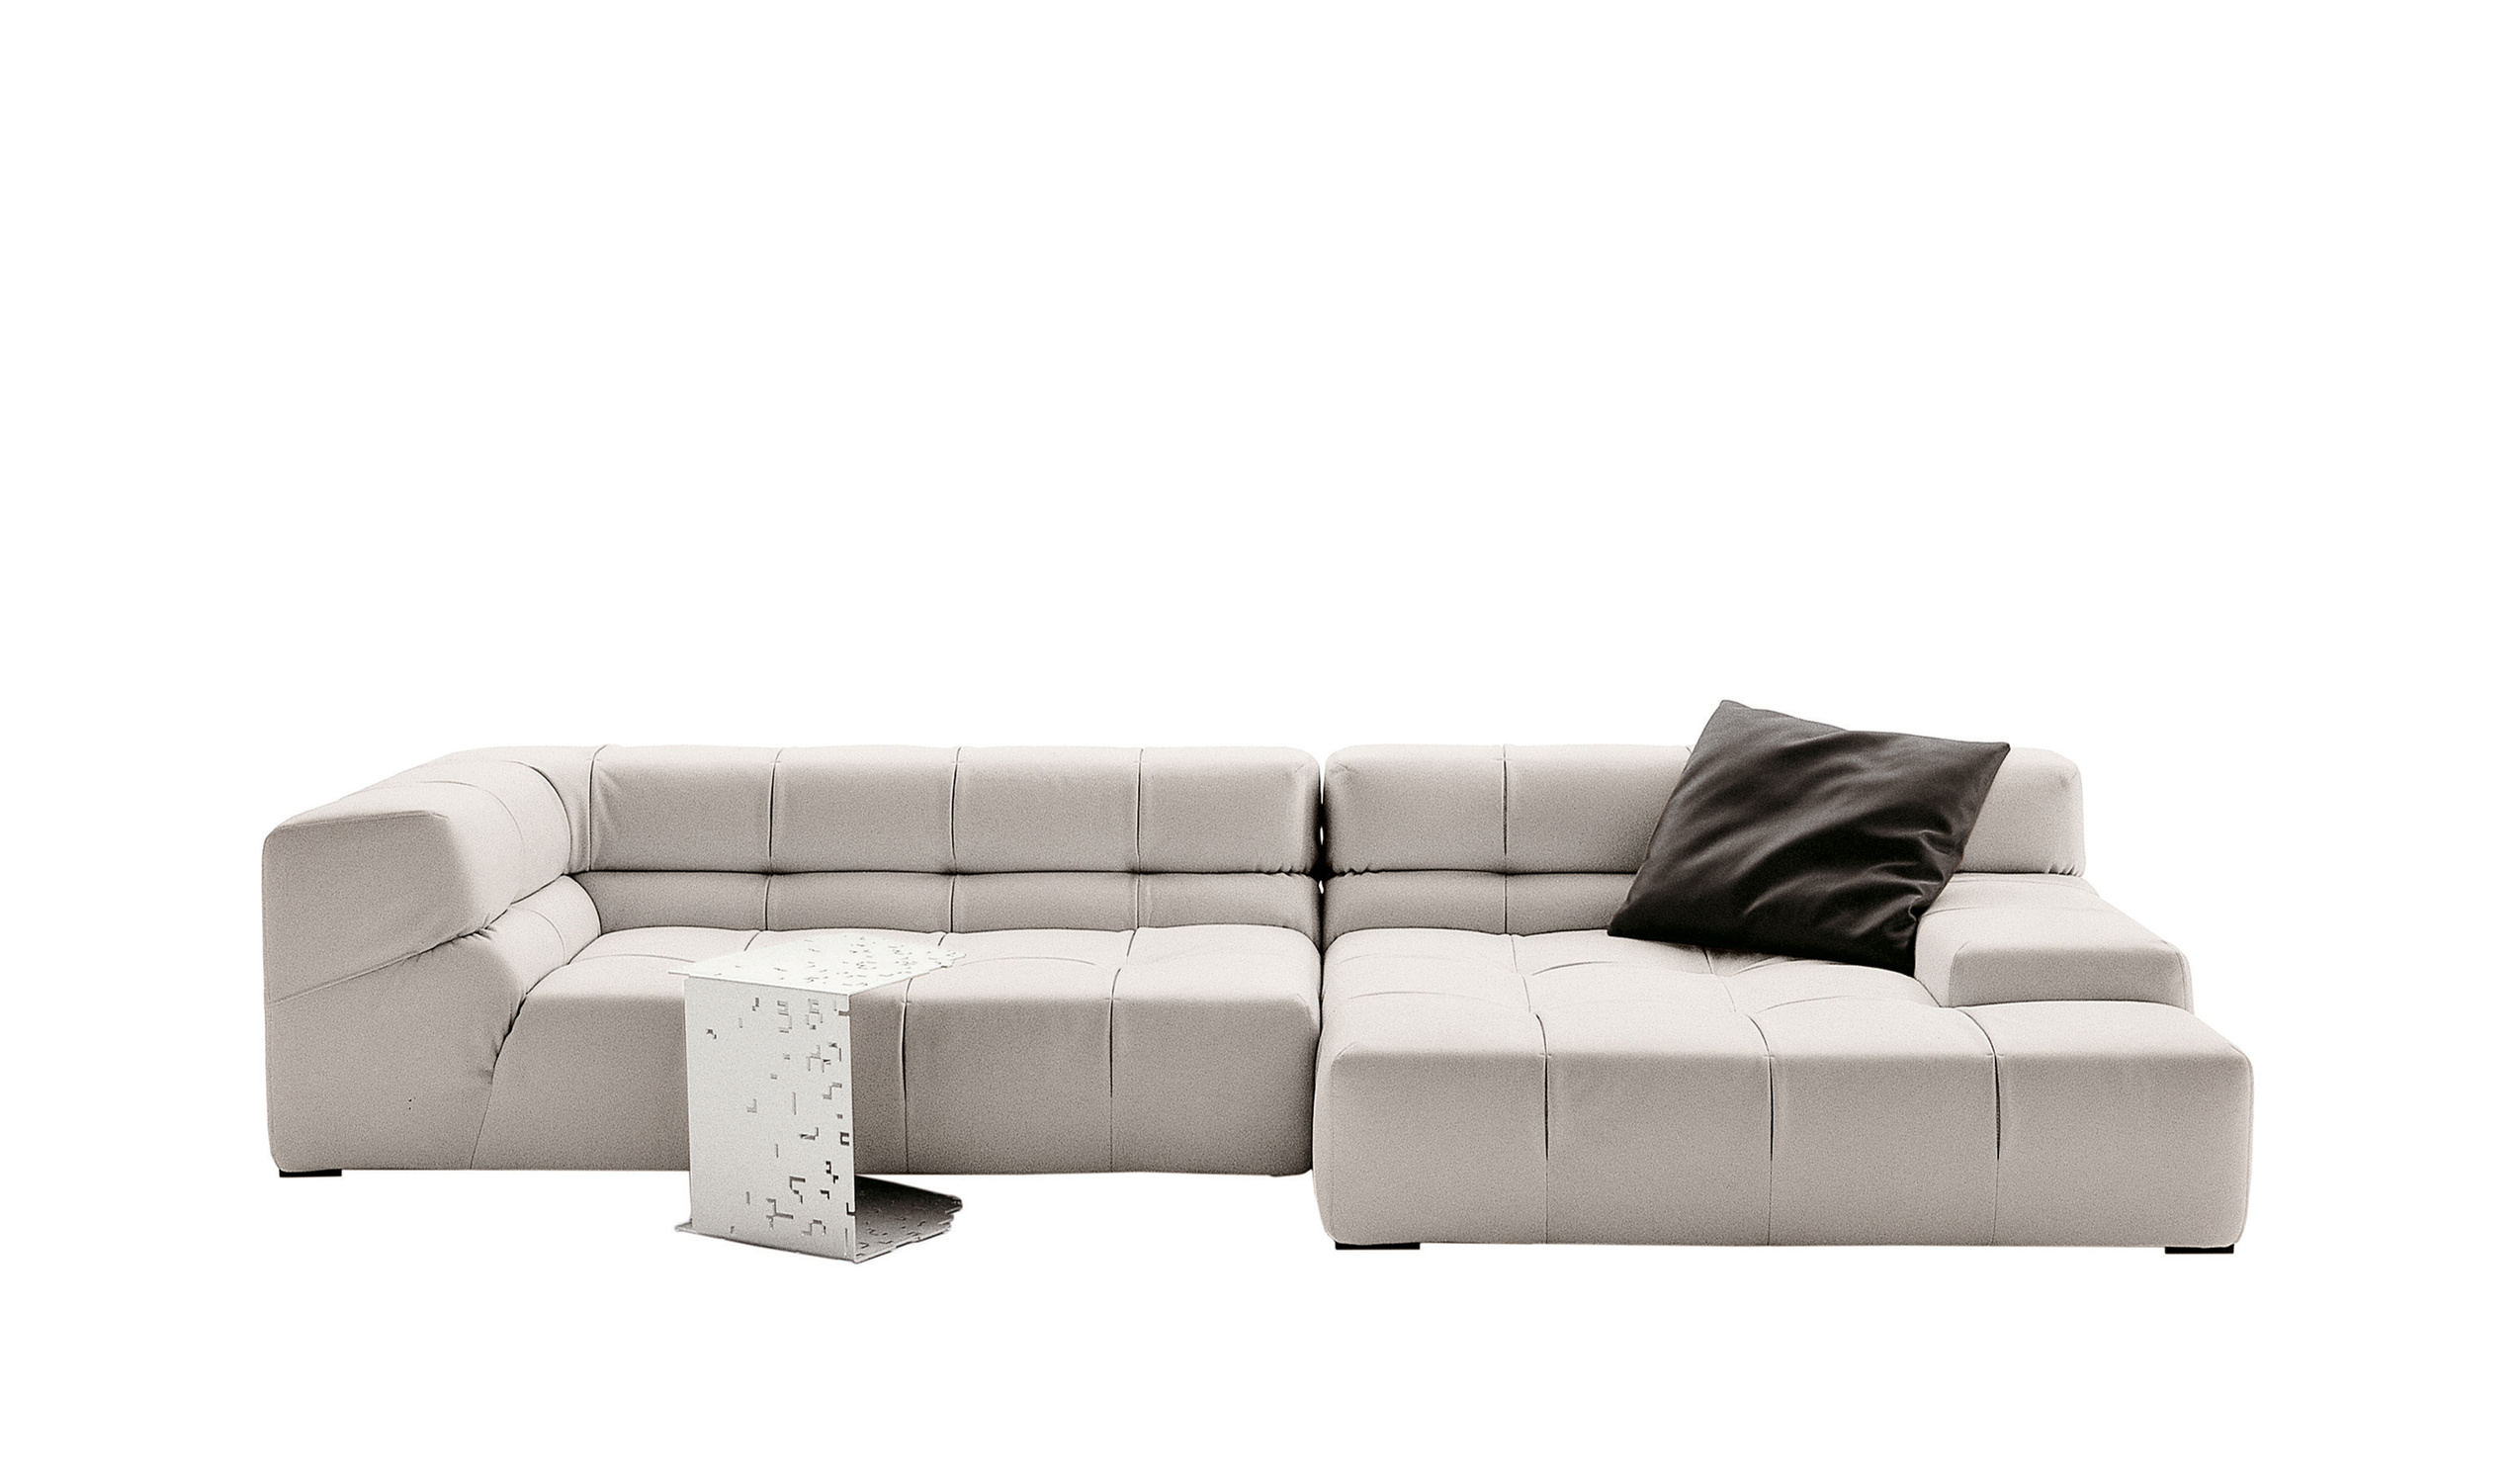 Modern designer italian sofas - Tufty-Time Sofas 7